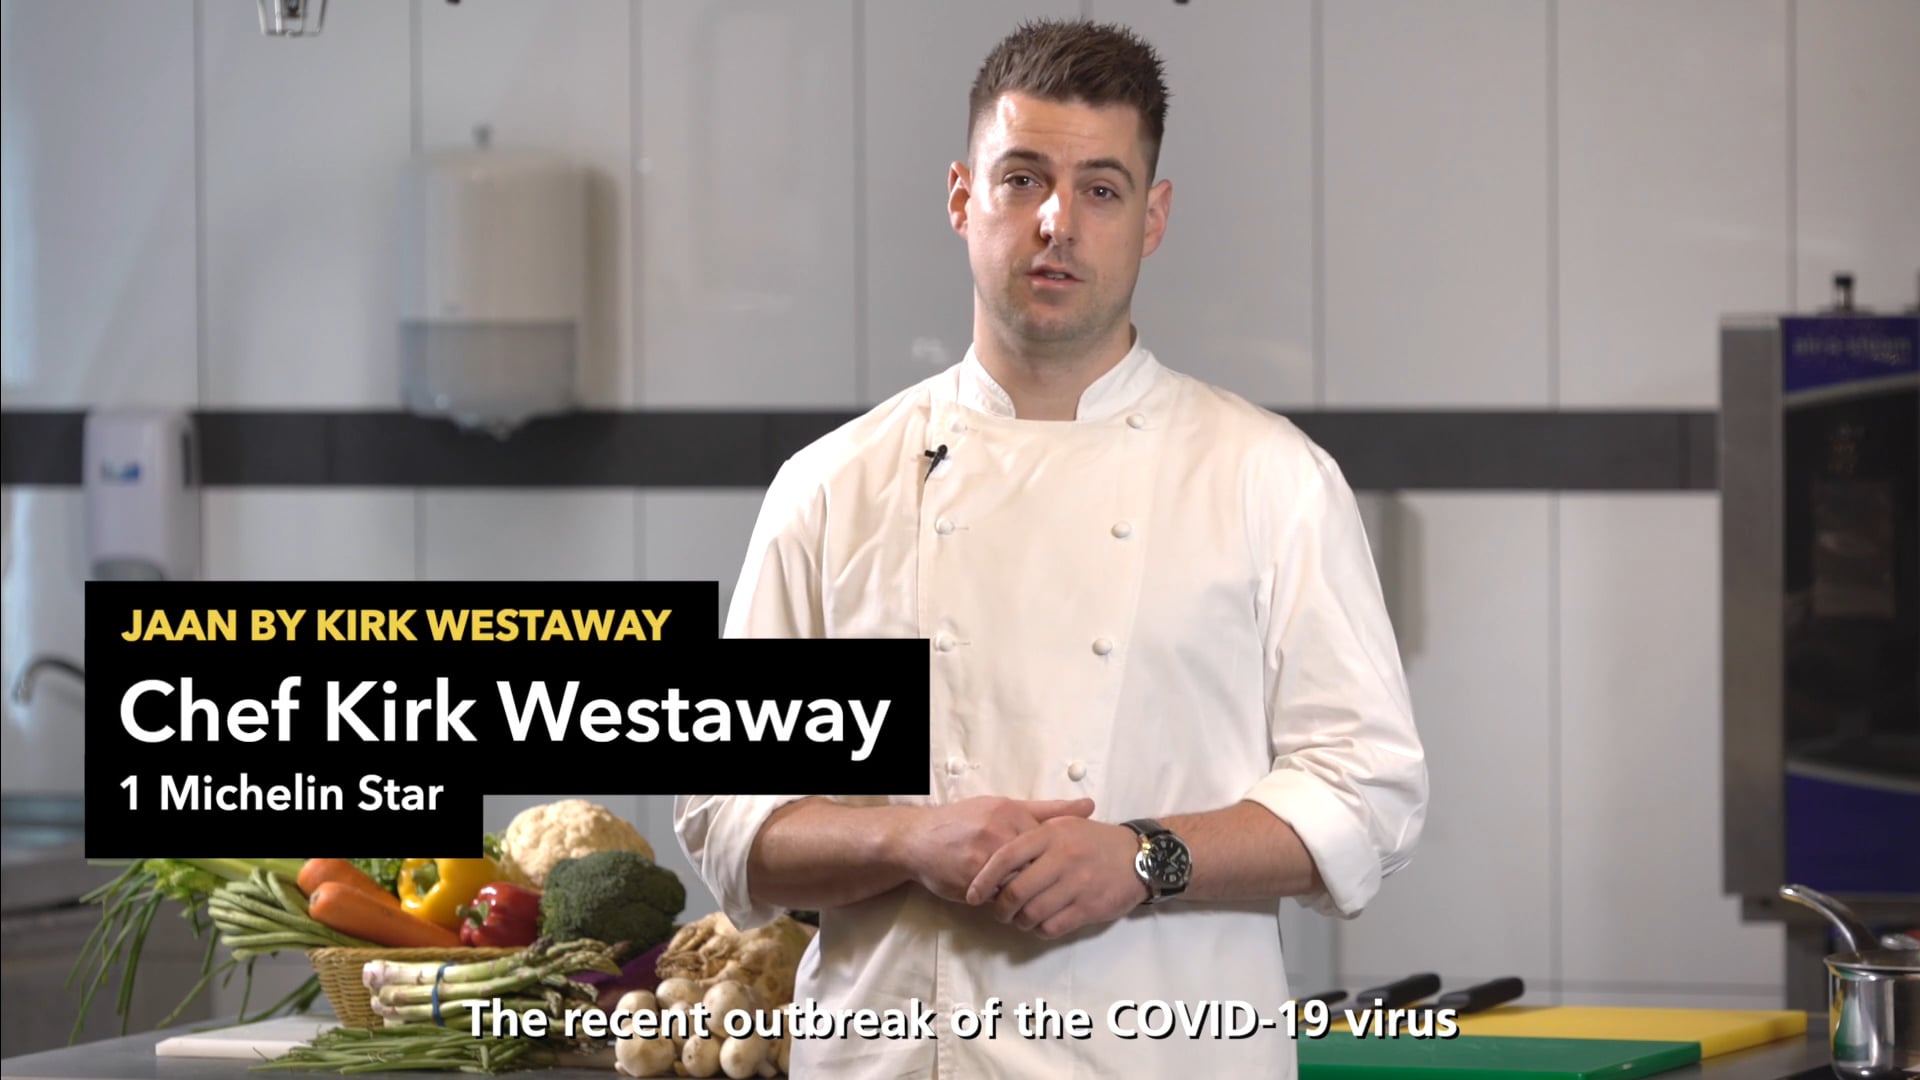 Chef Kirk Westaway